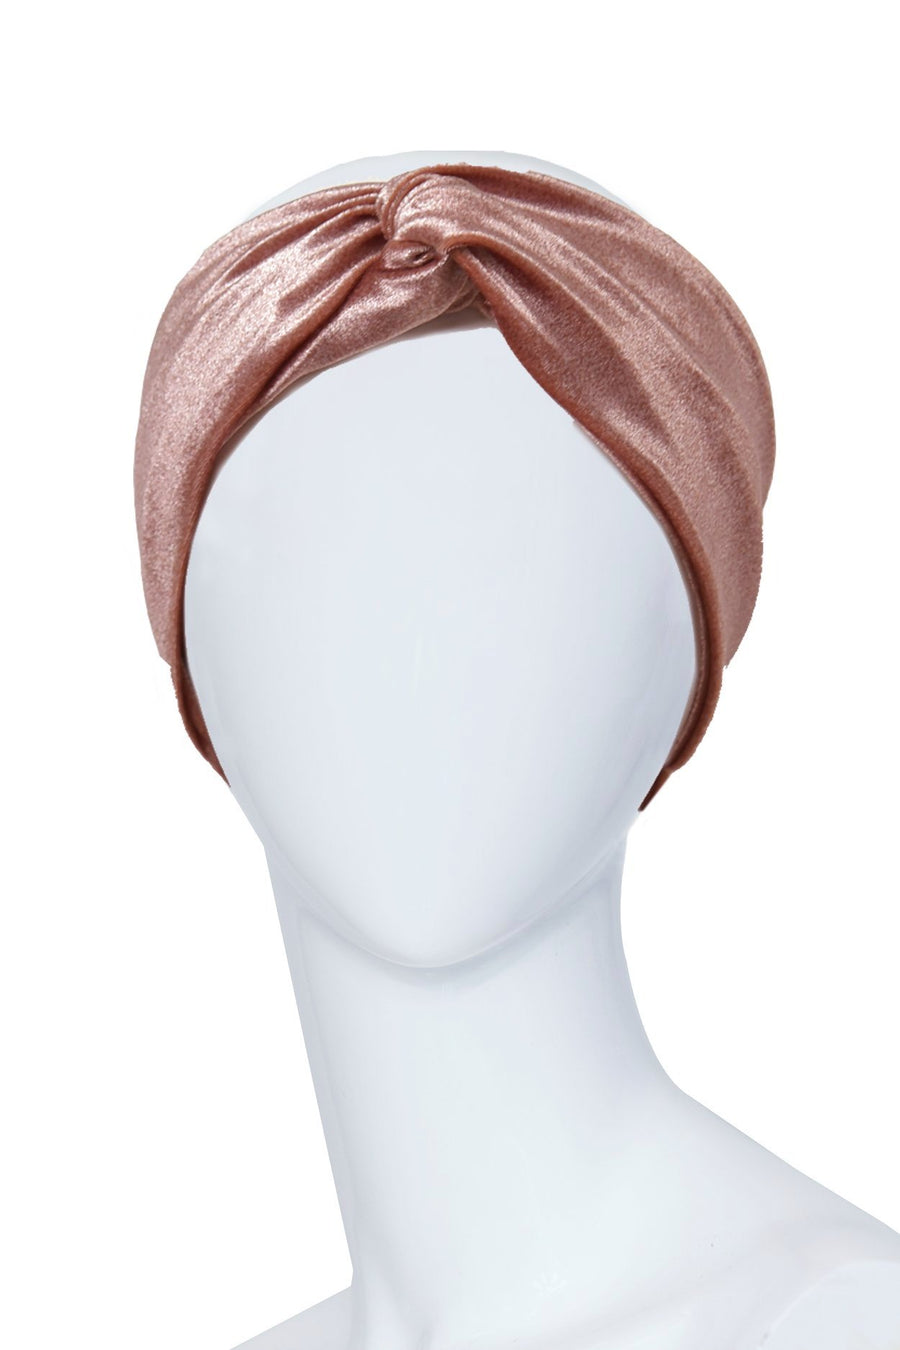 Pink velvet headband